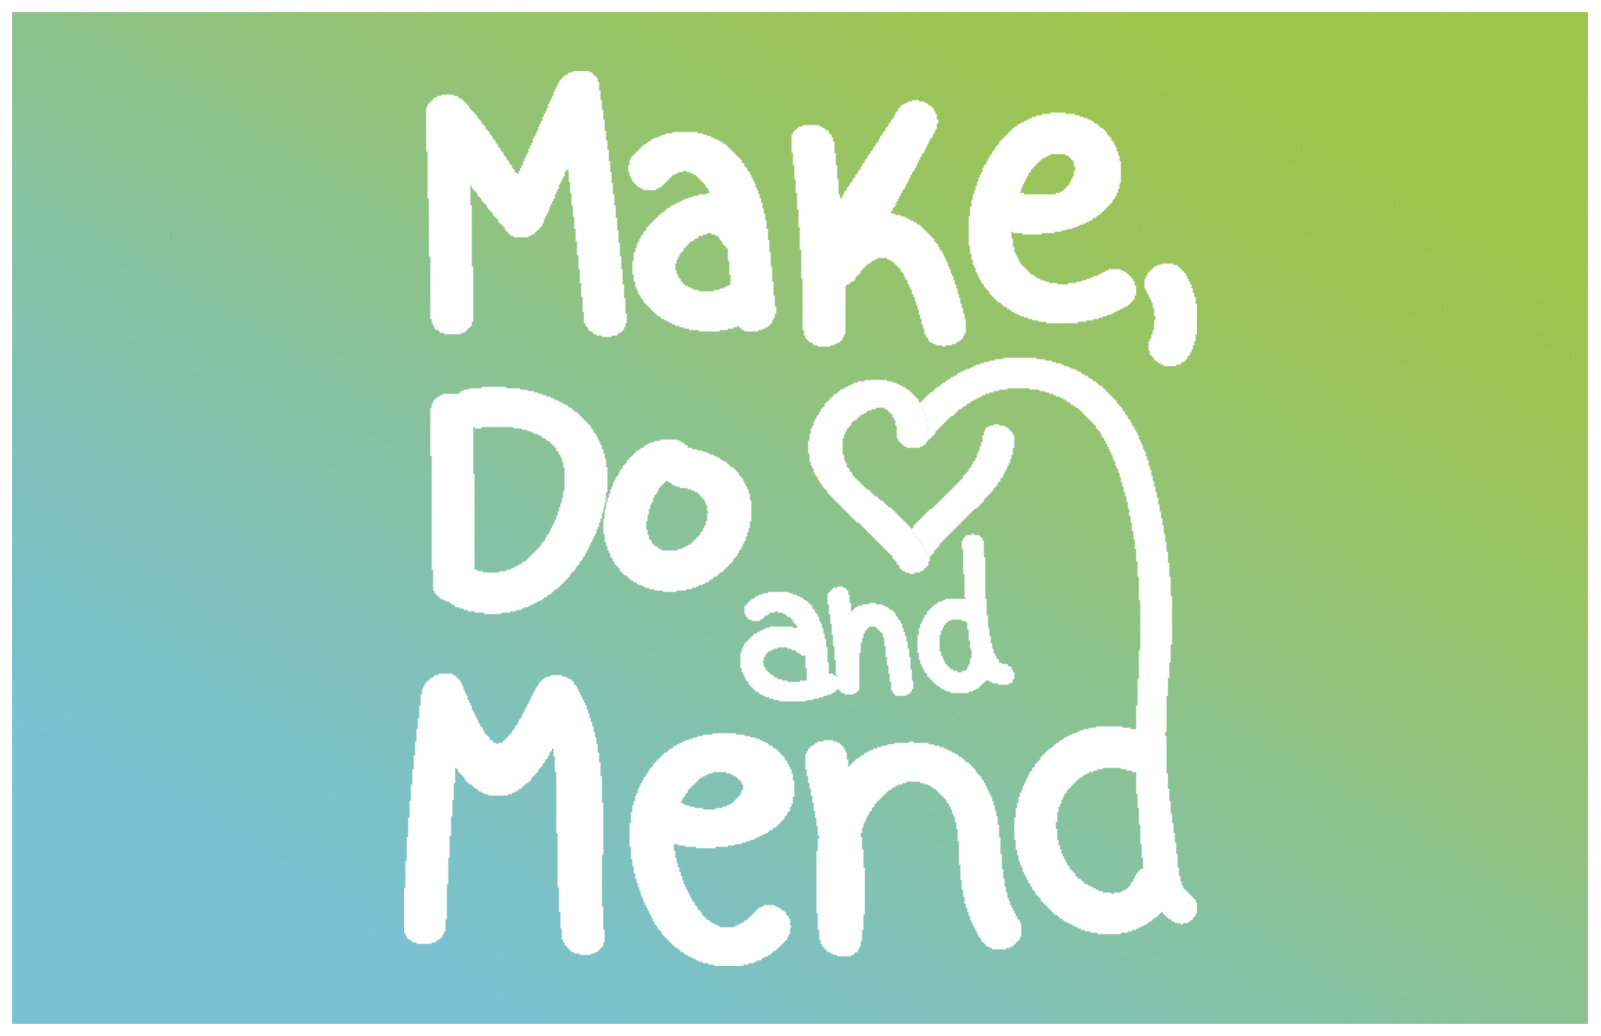 Make Do And Mend Logo